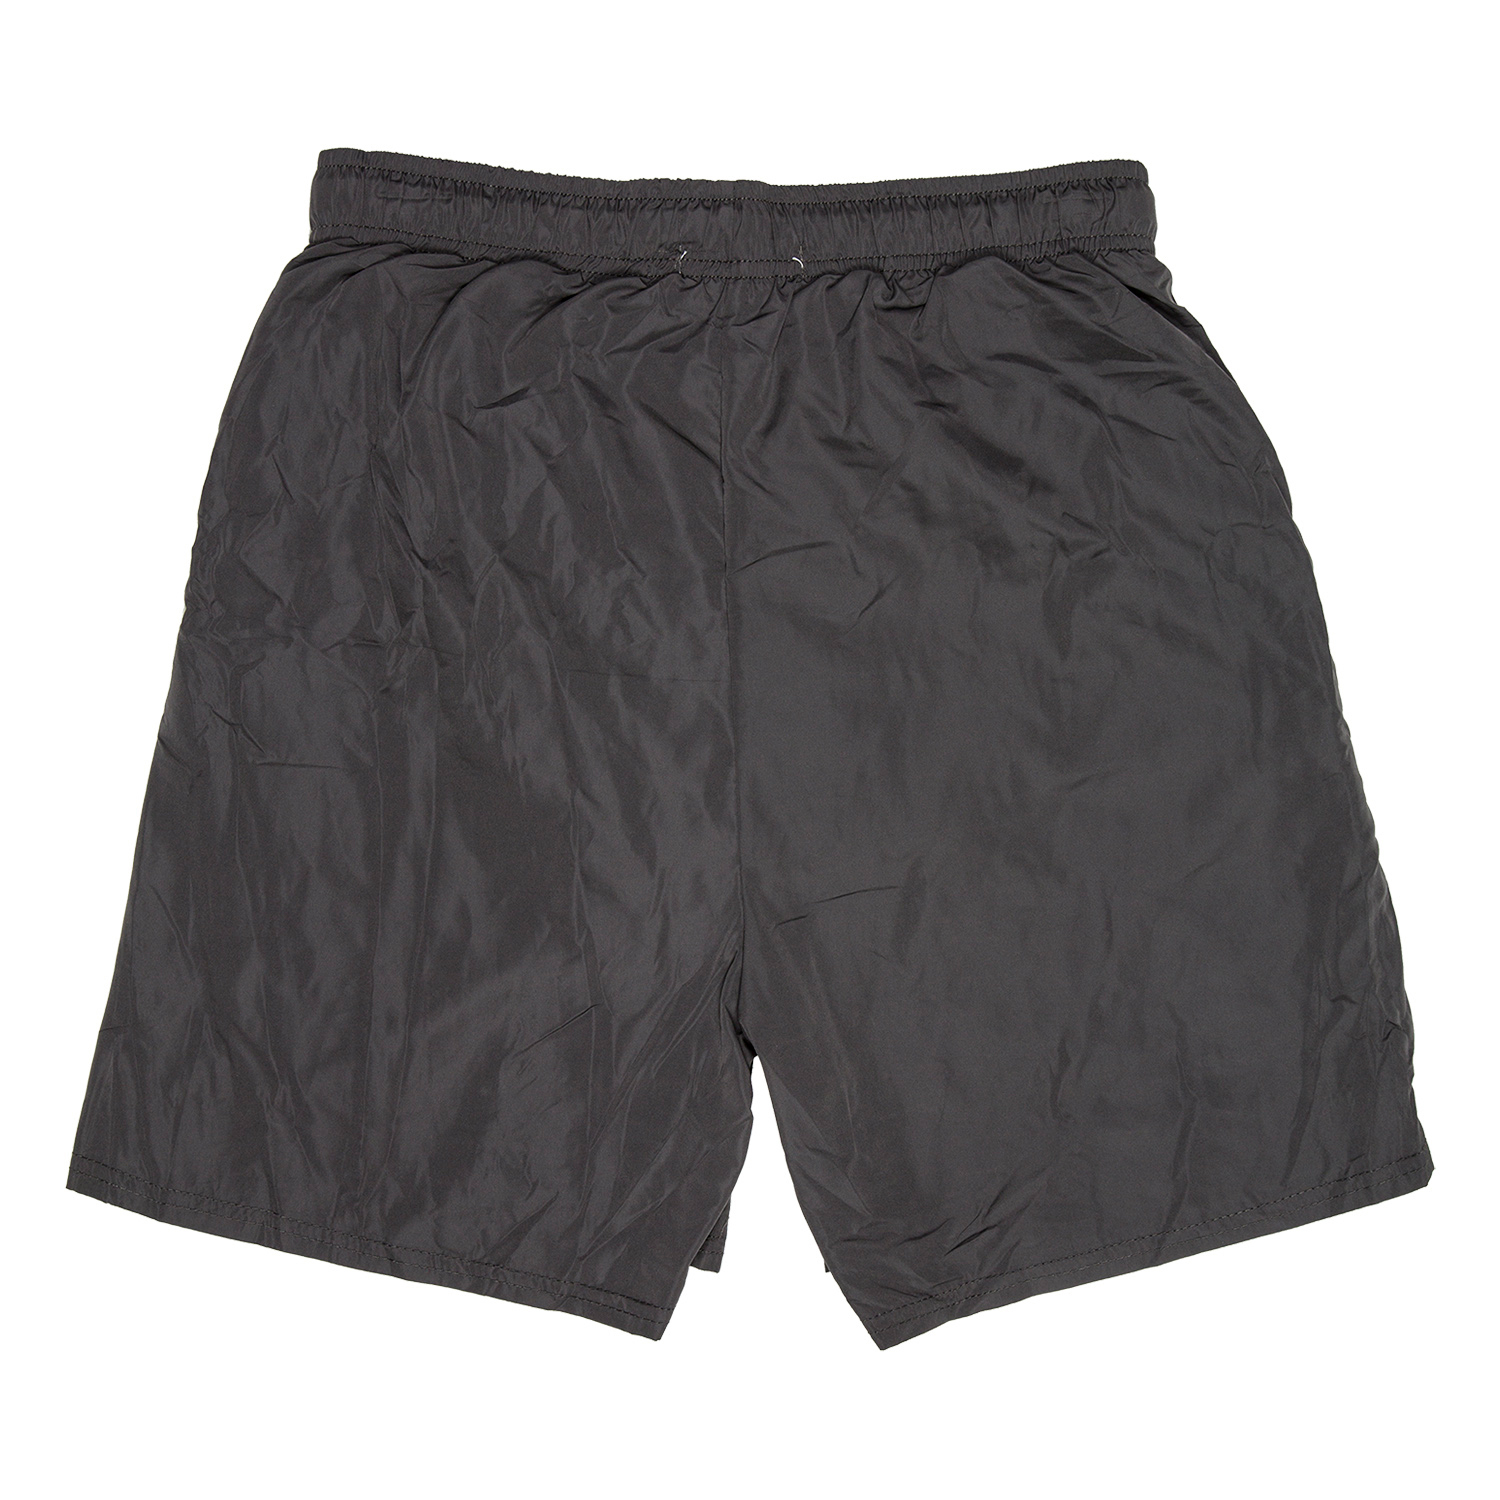 Active Sport Men's Woven Shorts - Black / M Image